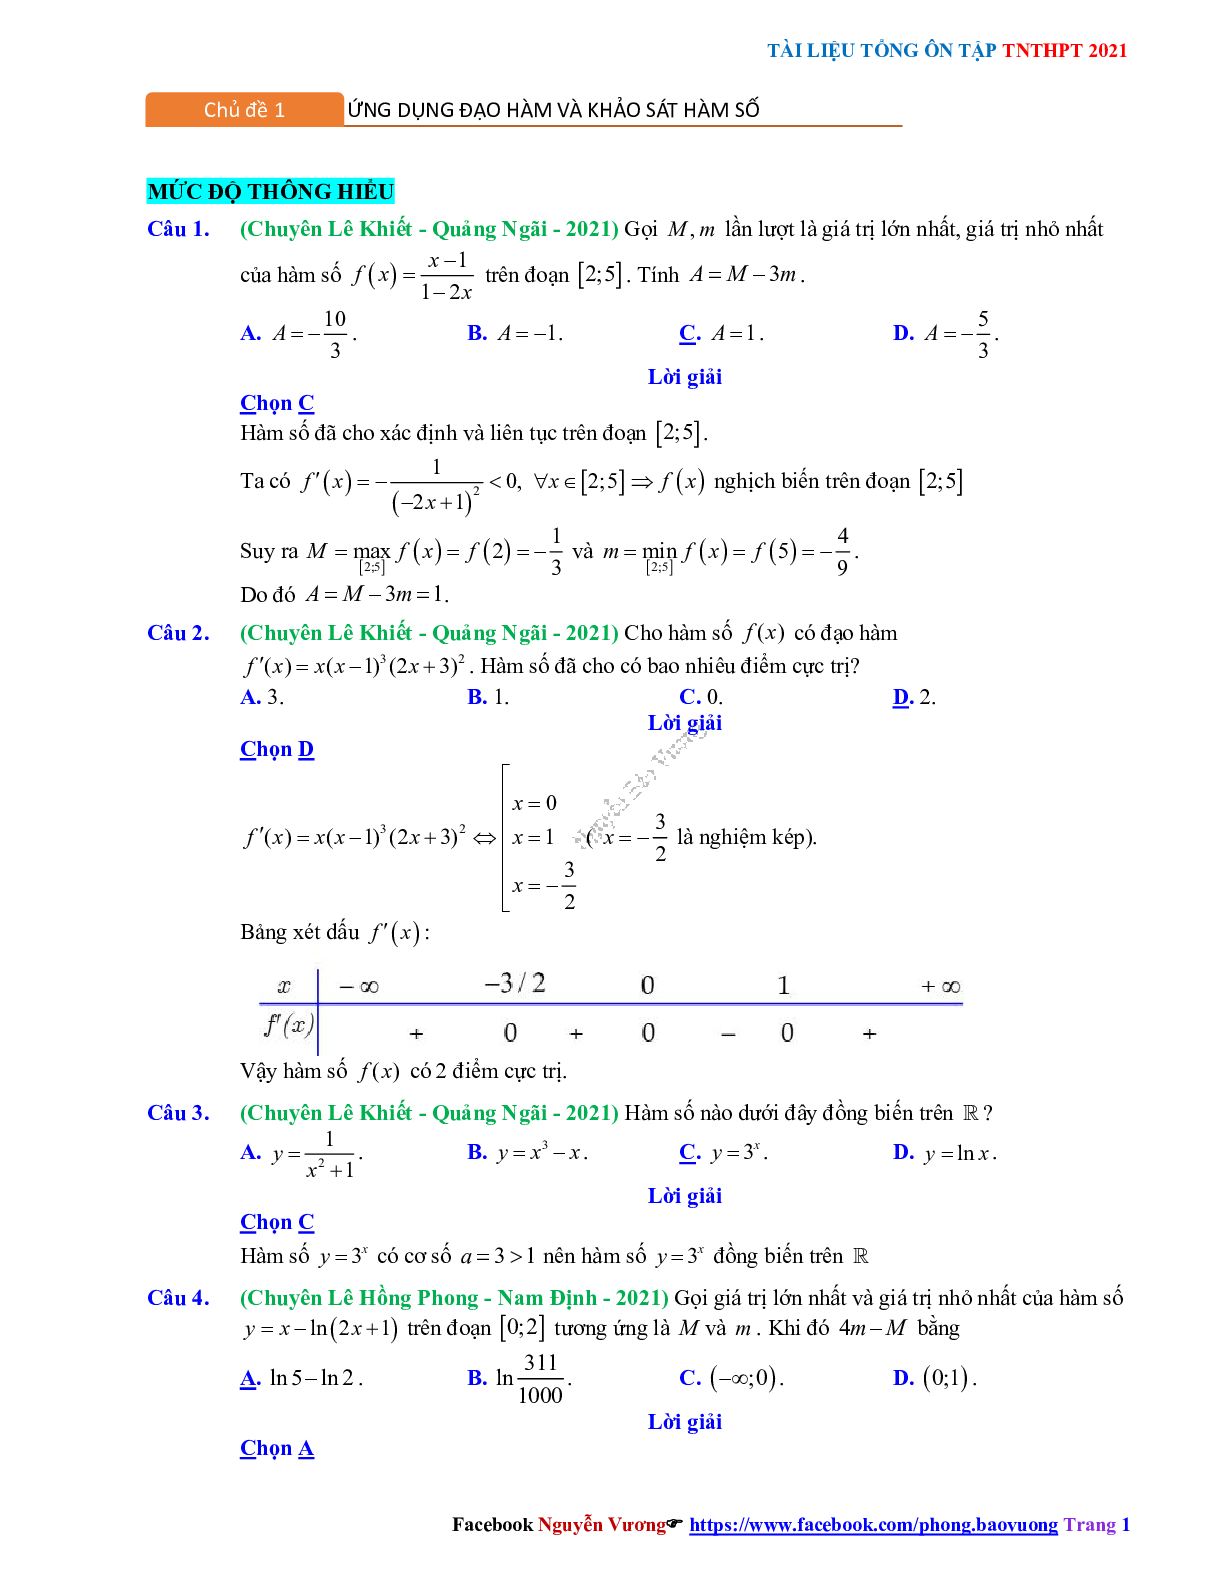 Chuyên đề Khảo sát hàm số - mức độ thông hiểu có đáp án môn Toán lớp 12 (trang 1)